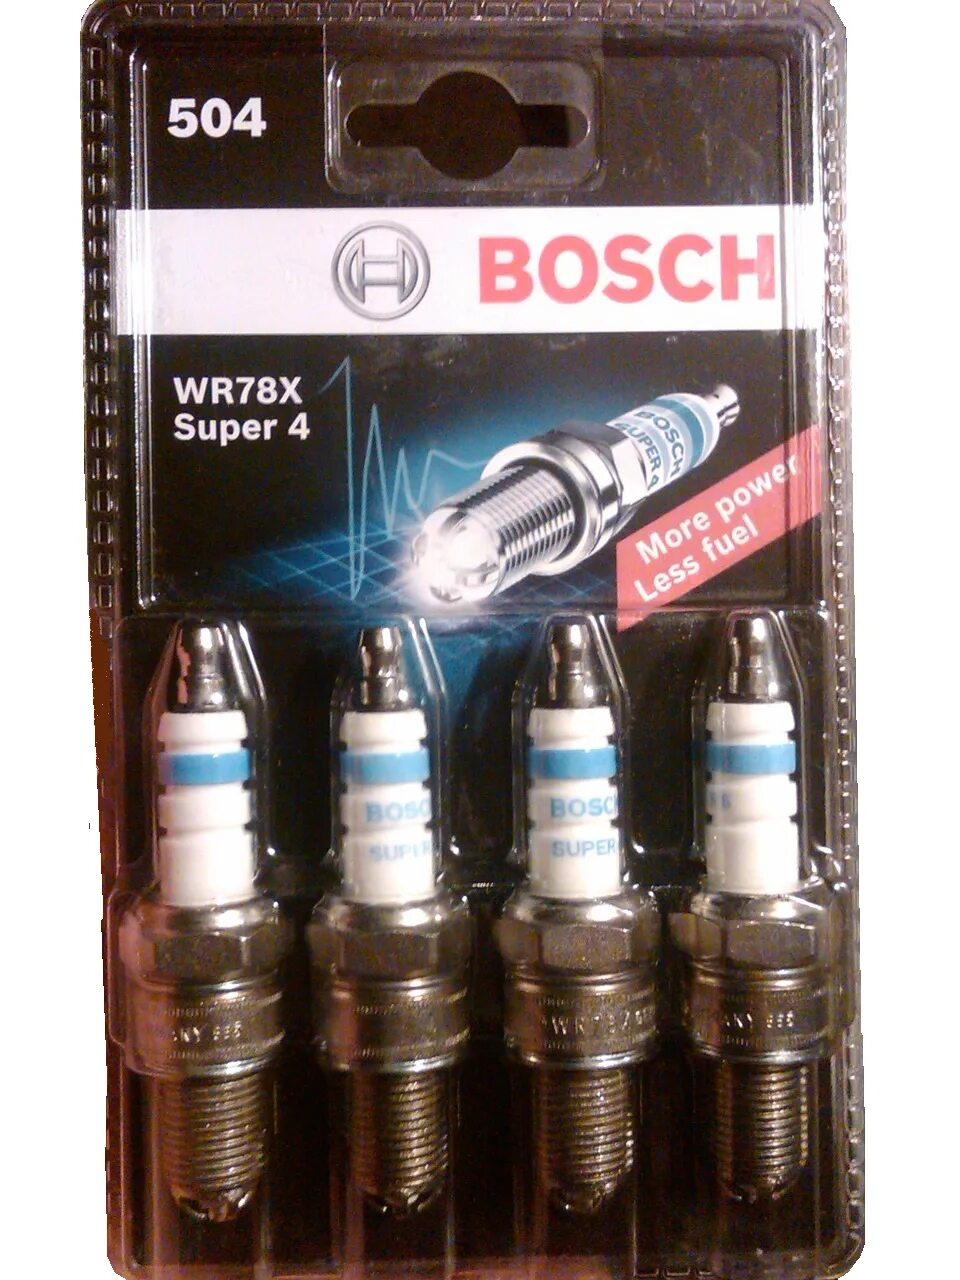 Bosch super 4. Свечи зажигания Bosch super 4 r6. Четырёх контактные свечи зажигания Bosch wr78x Польша. Свечи бош с короткой юбкой. Свечи бош супер 4 для Ауди 80.